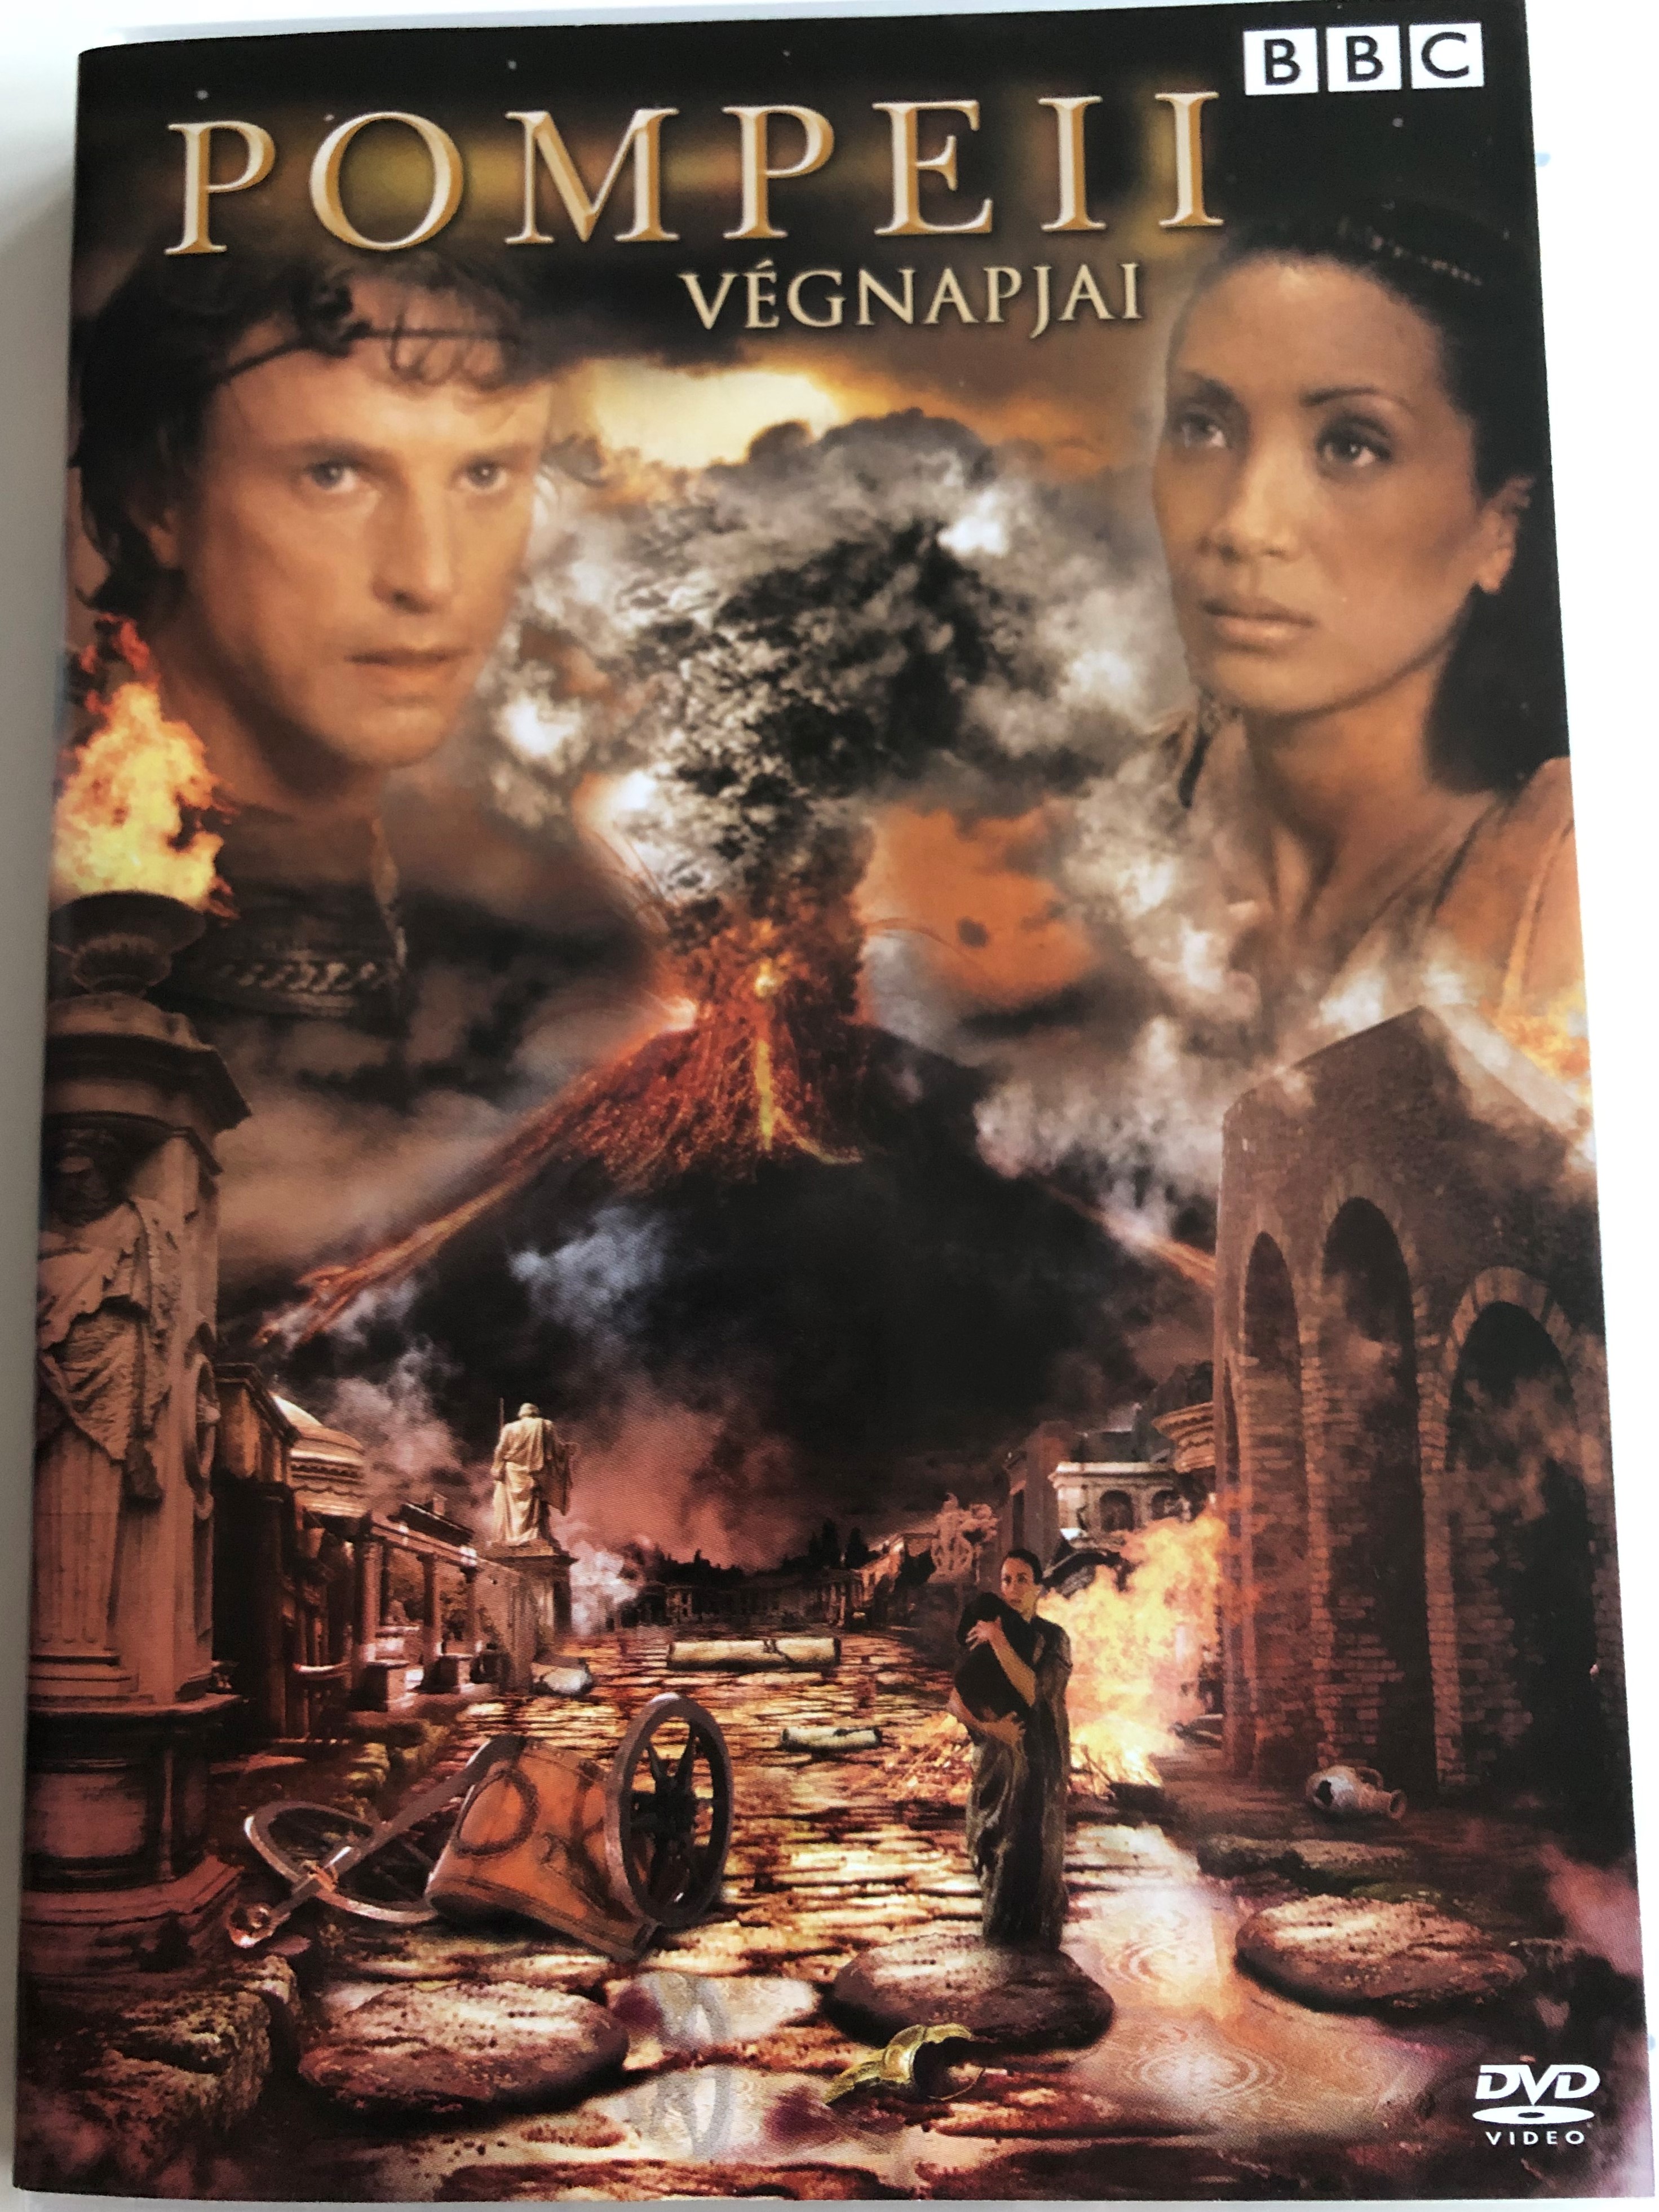 pompeii-the-last-days-dvd-2003-pompeii-v-gnapjai-bbc-1.jpg